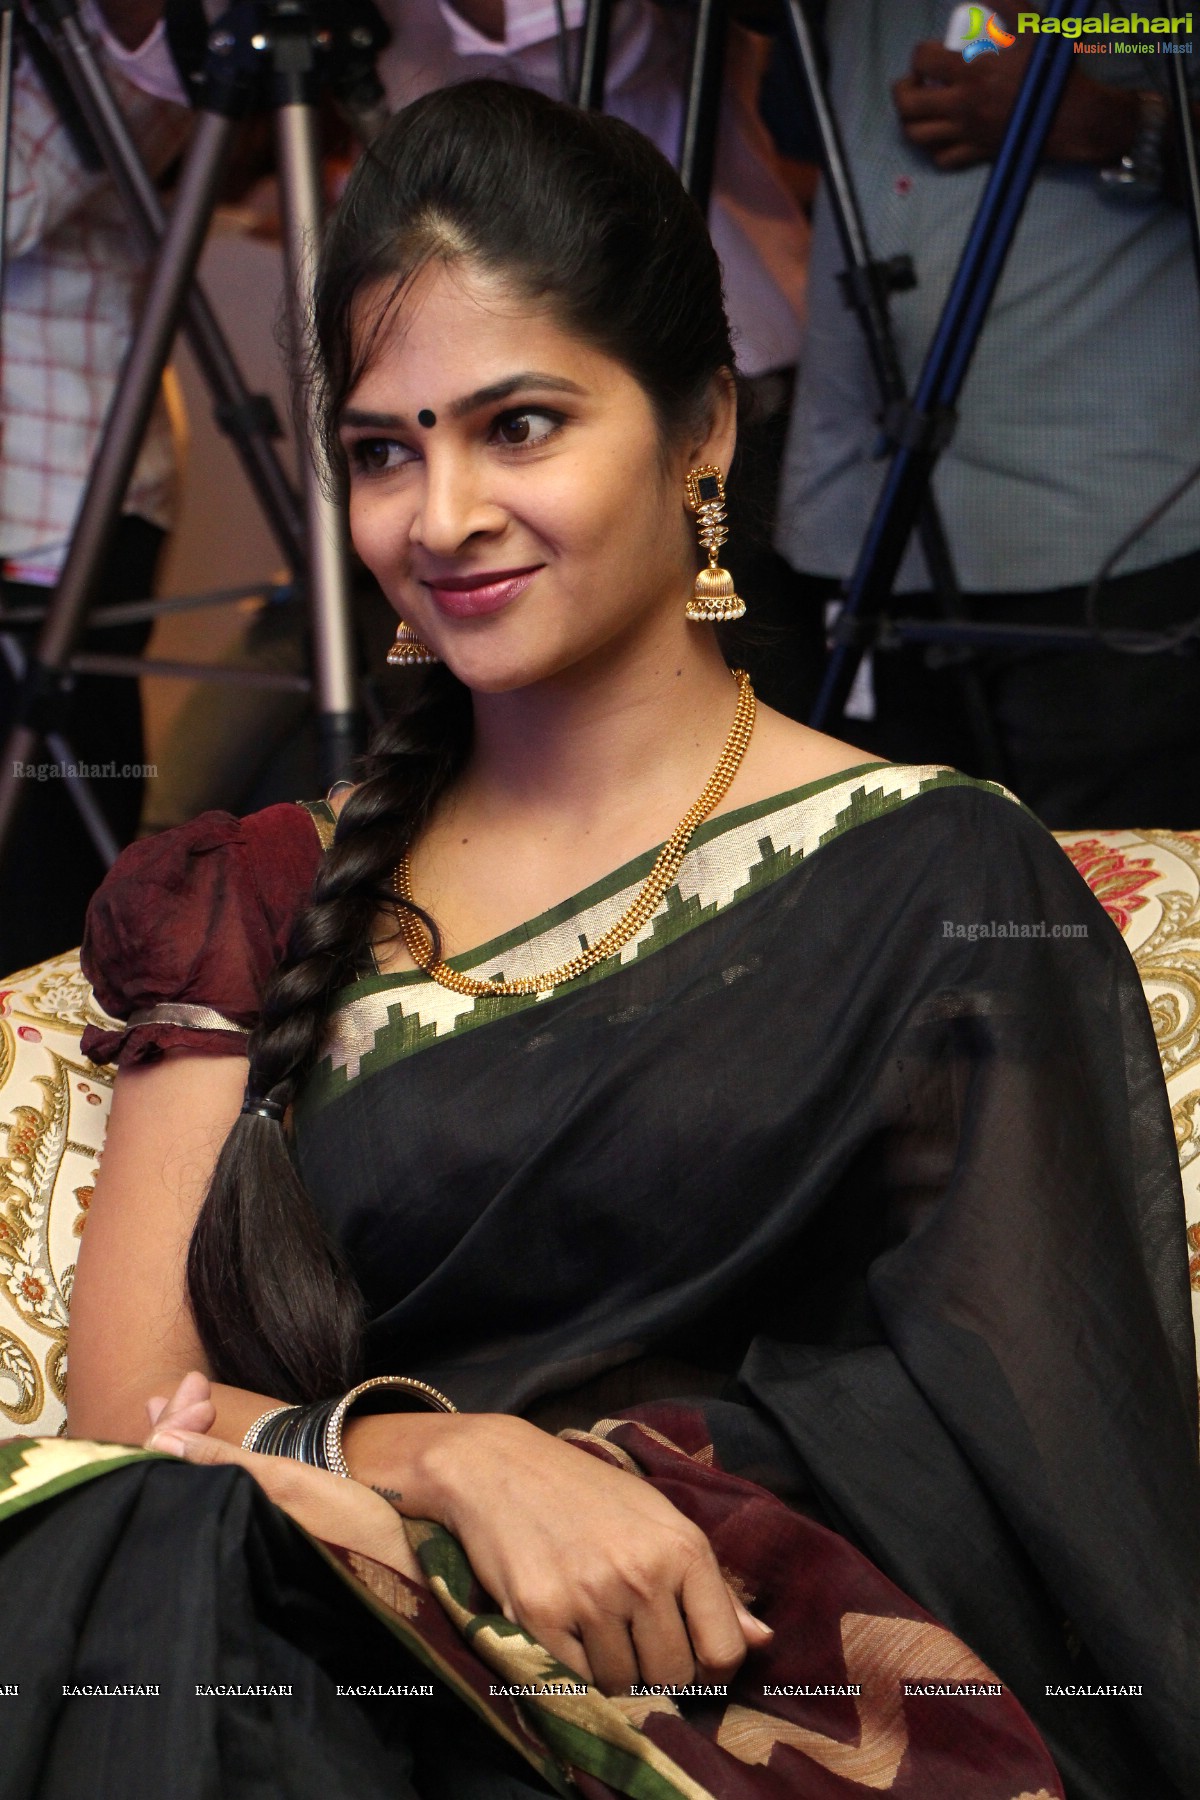 Madhumitha Sivabalaji